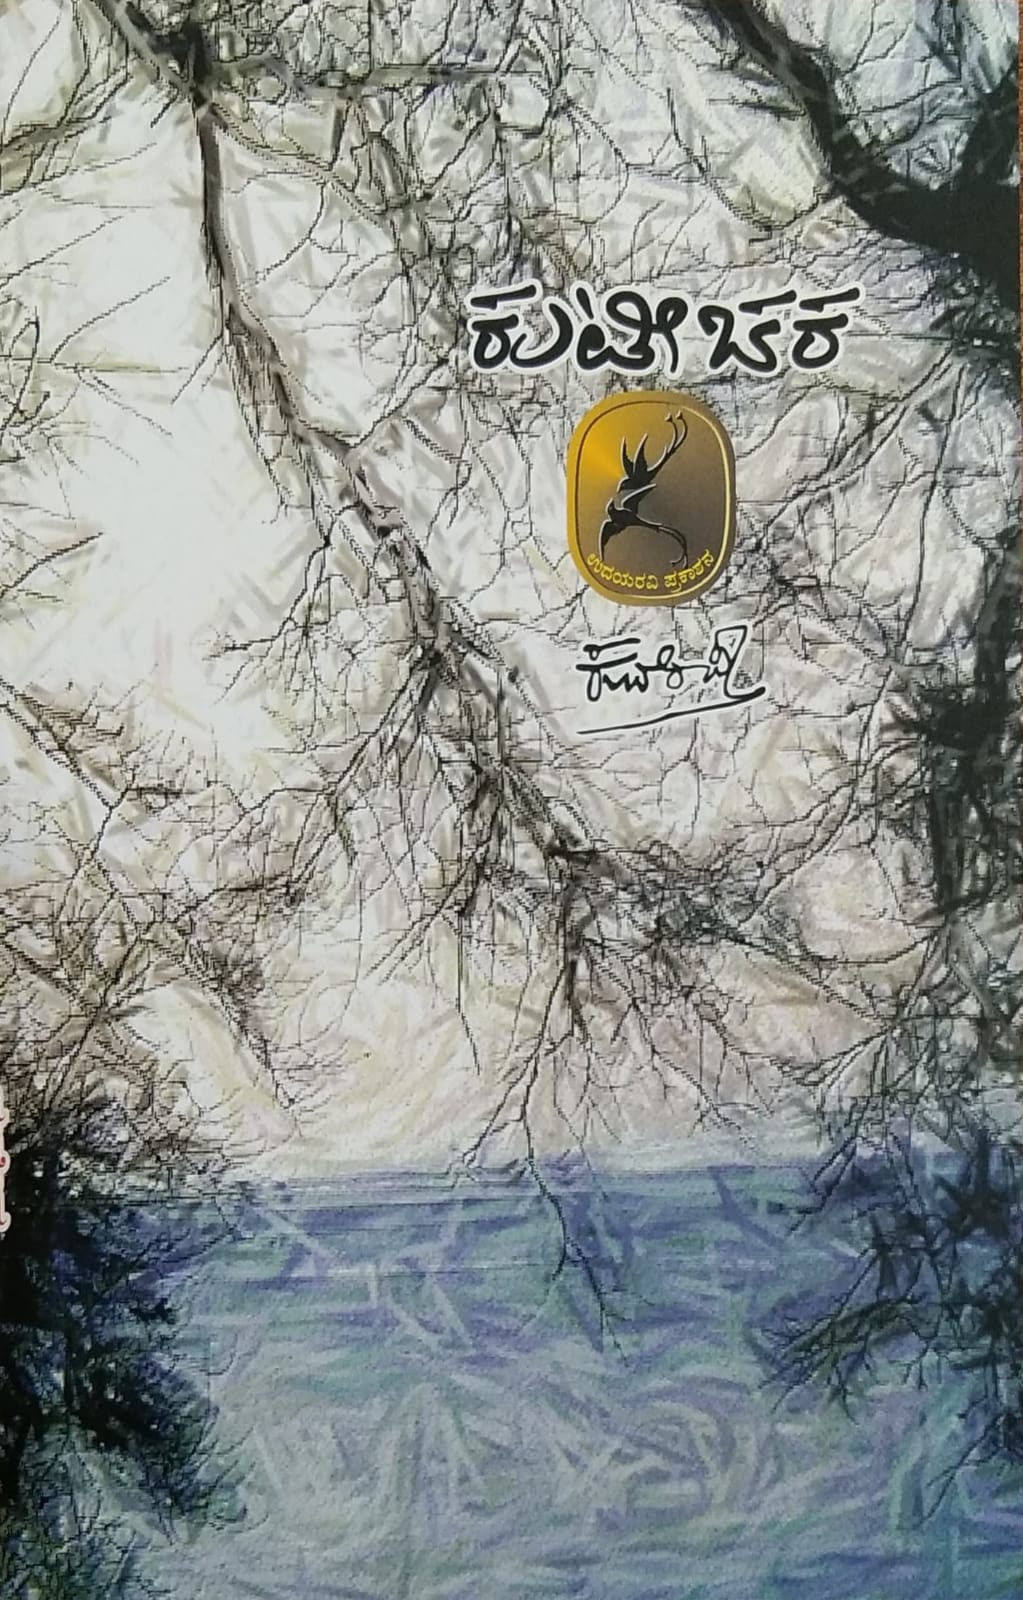 kuteechara, collection of Poems, Kuvempu Books